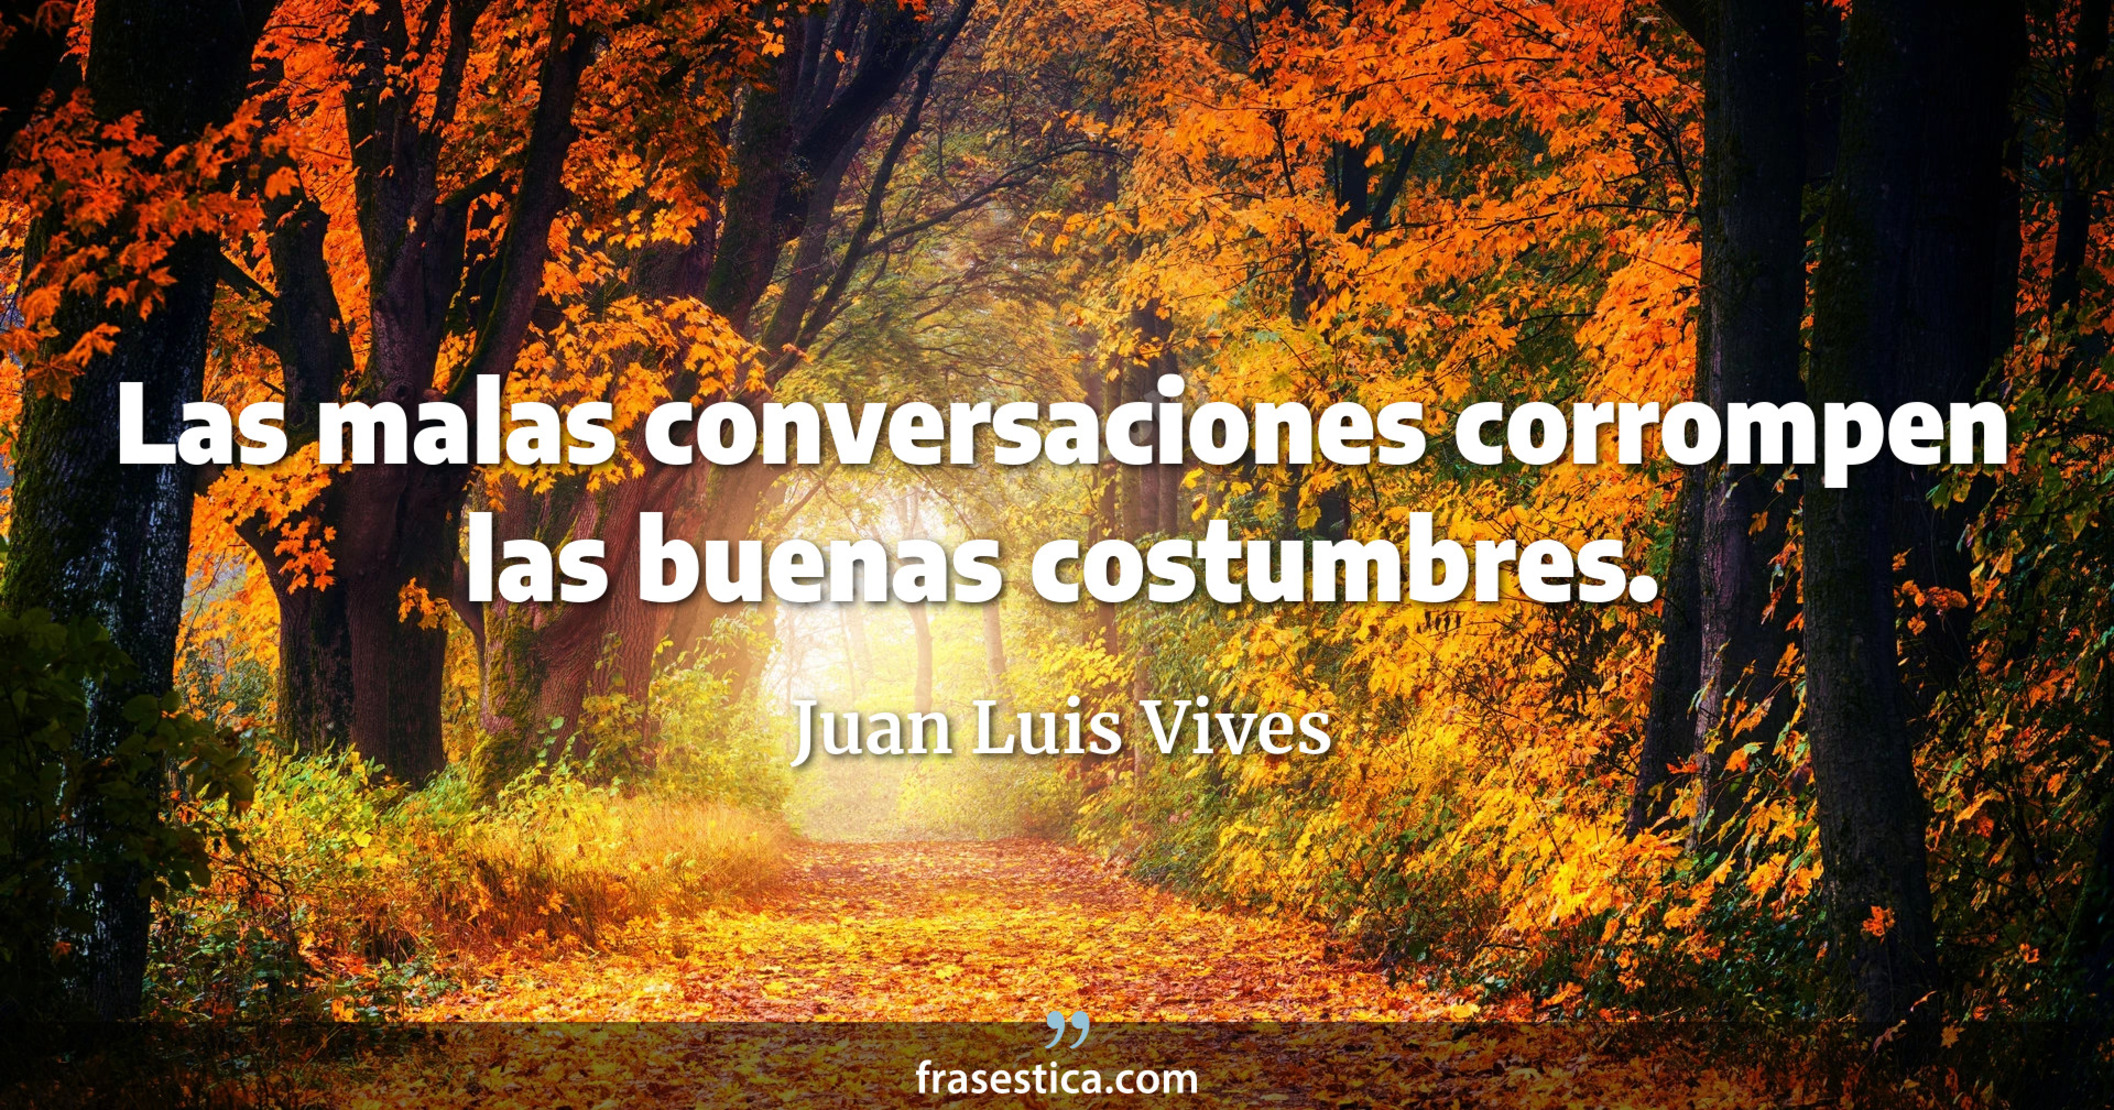 Las malas conversaciones corrompen las buenas costumbres. - Juan Luis Vives